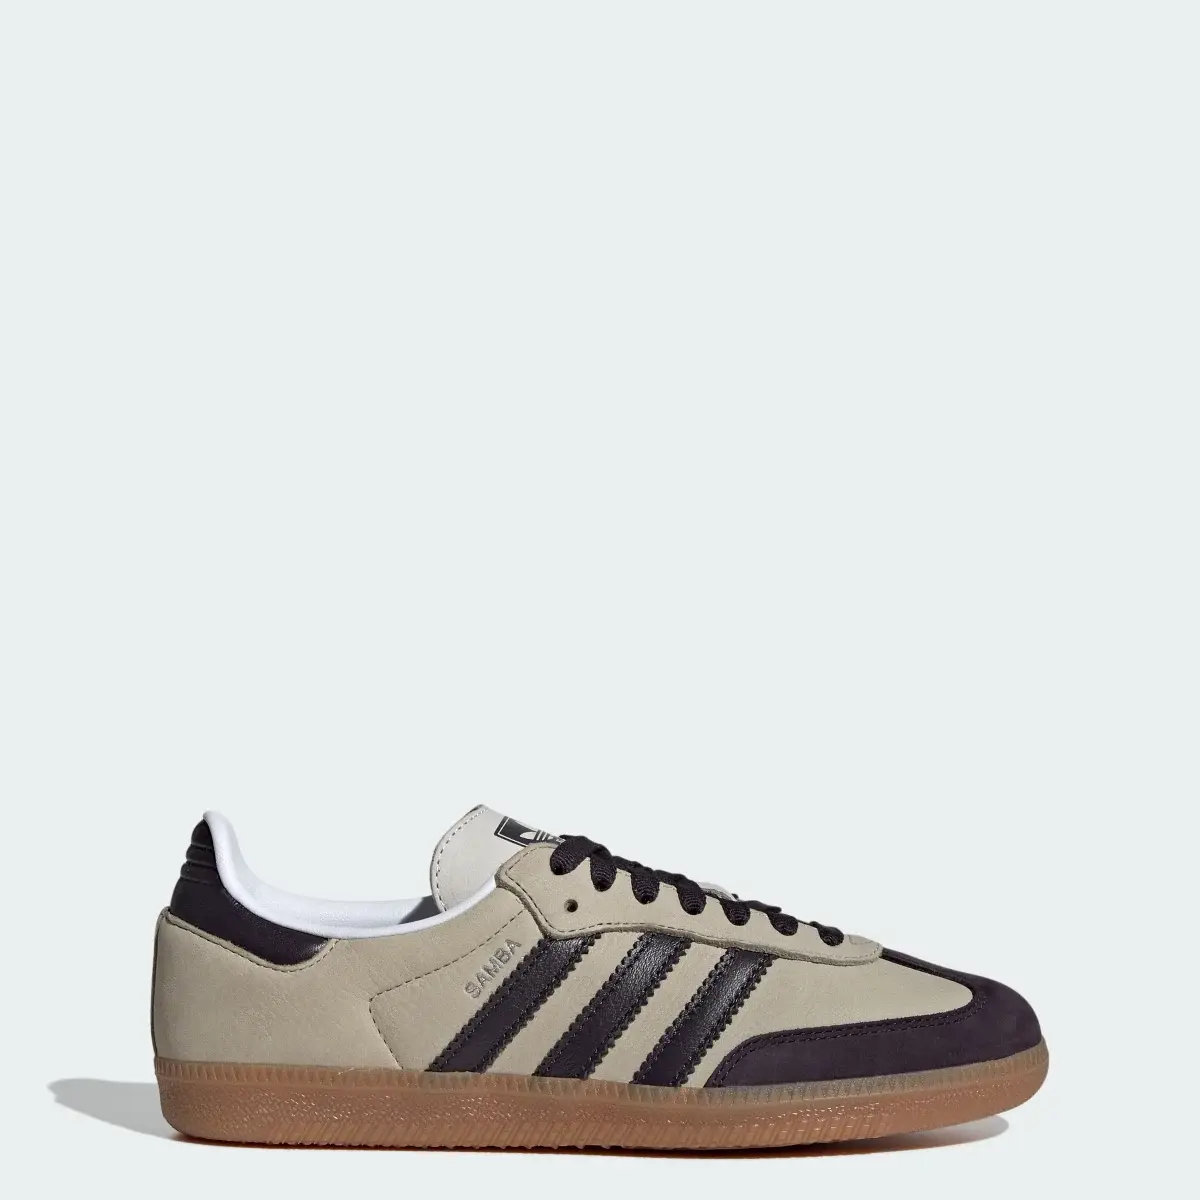 Adidas Samba OG Shoes. 1